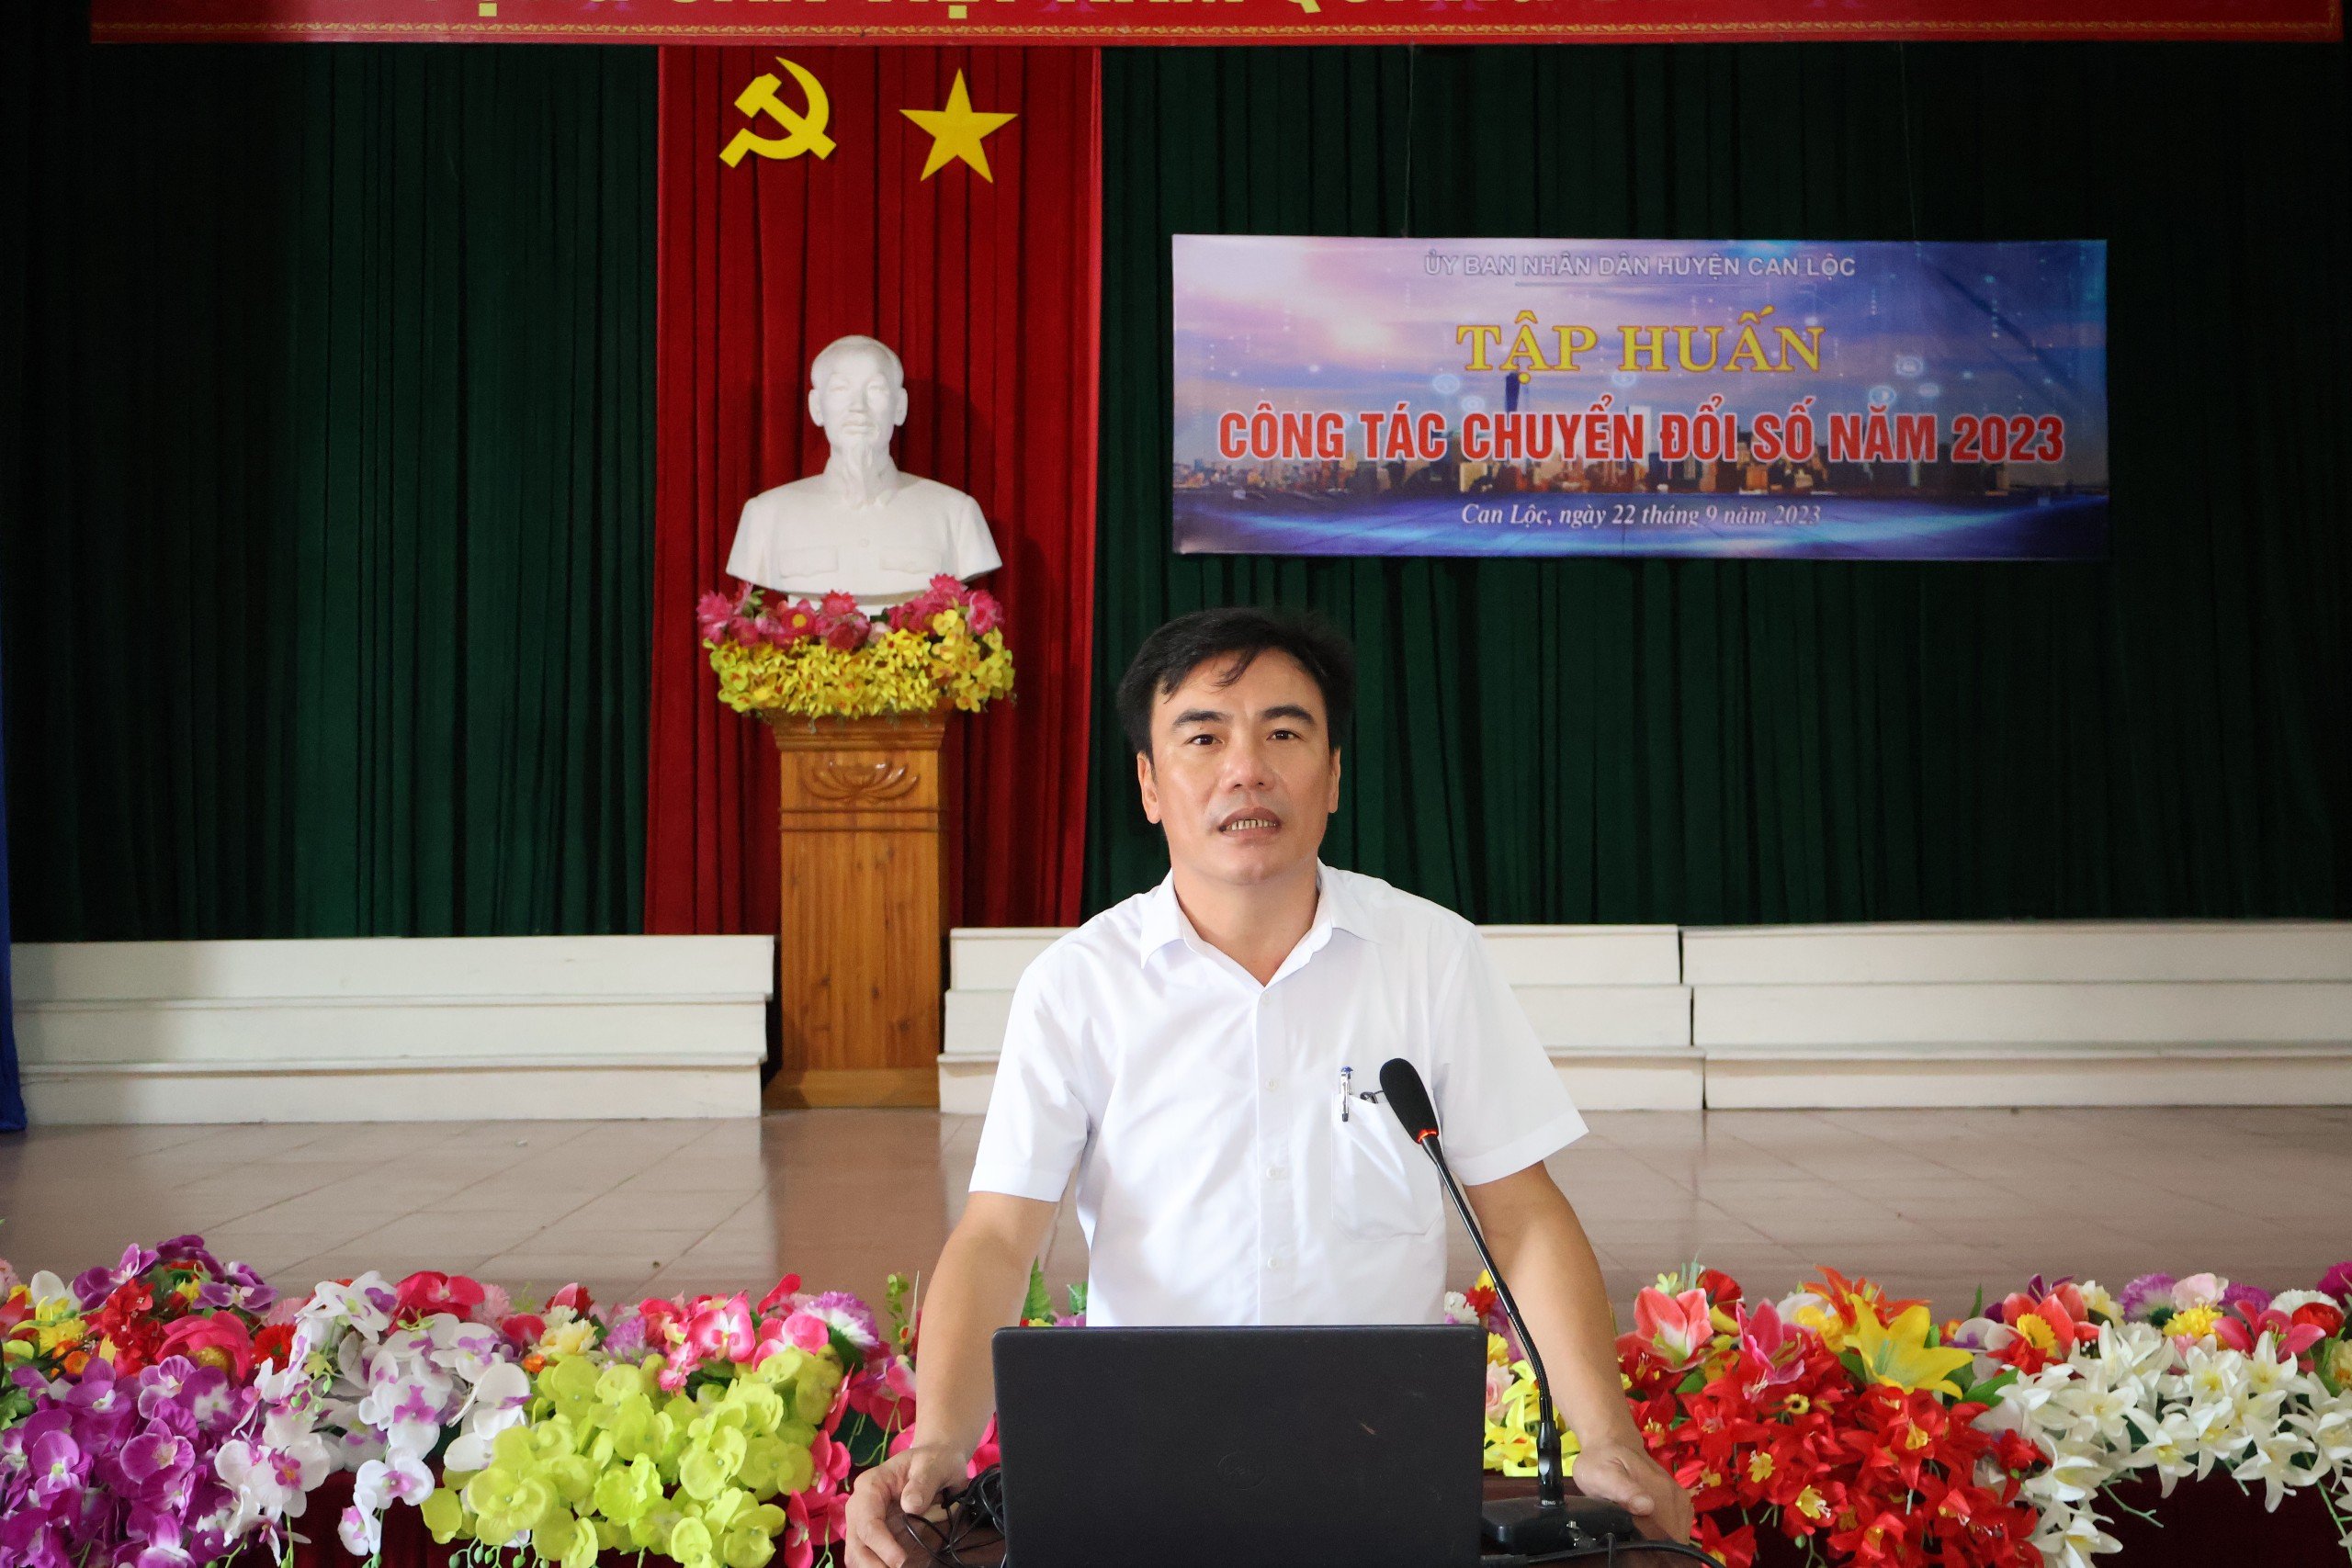 Can Lộc đẩy mạnh công tác chuyển đổi số năm 2023